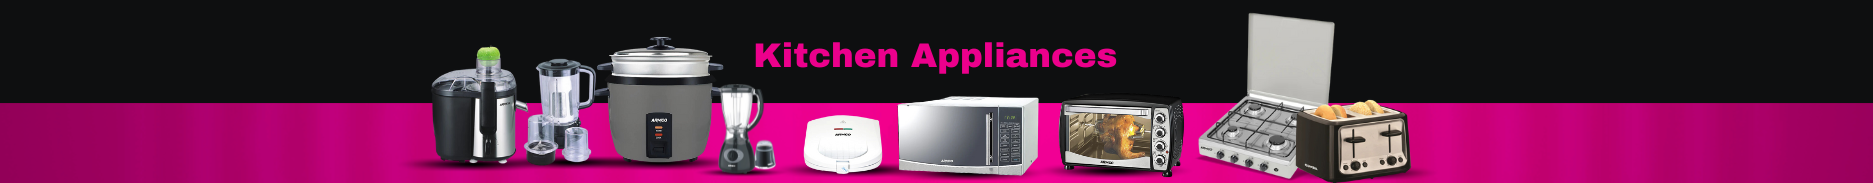 Armco kitchen appliances. 